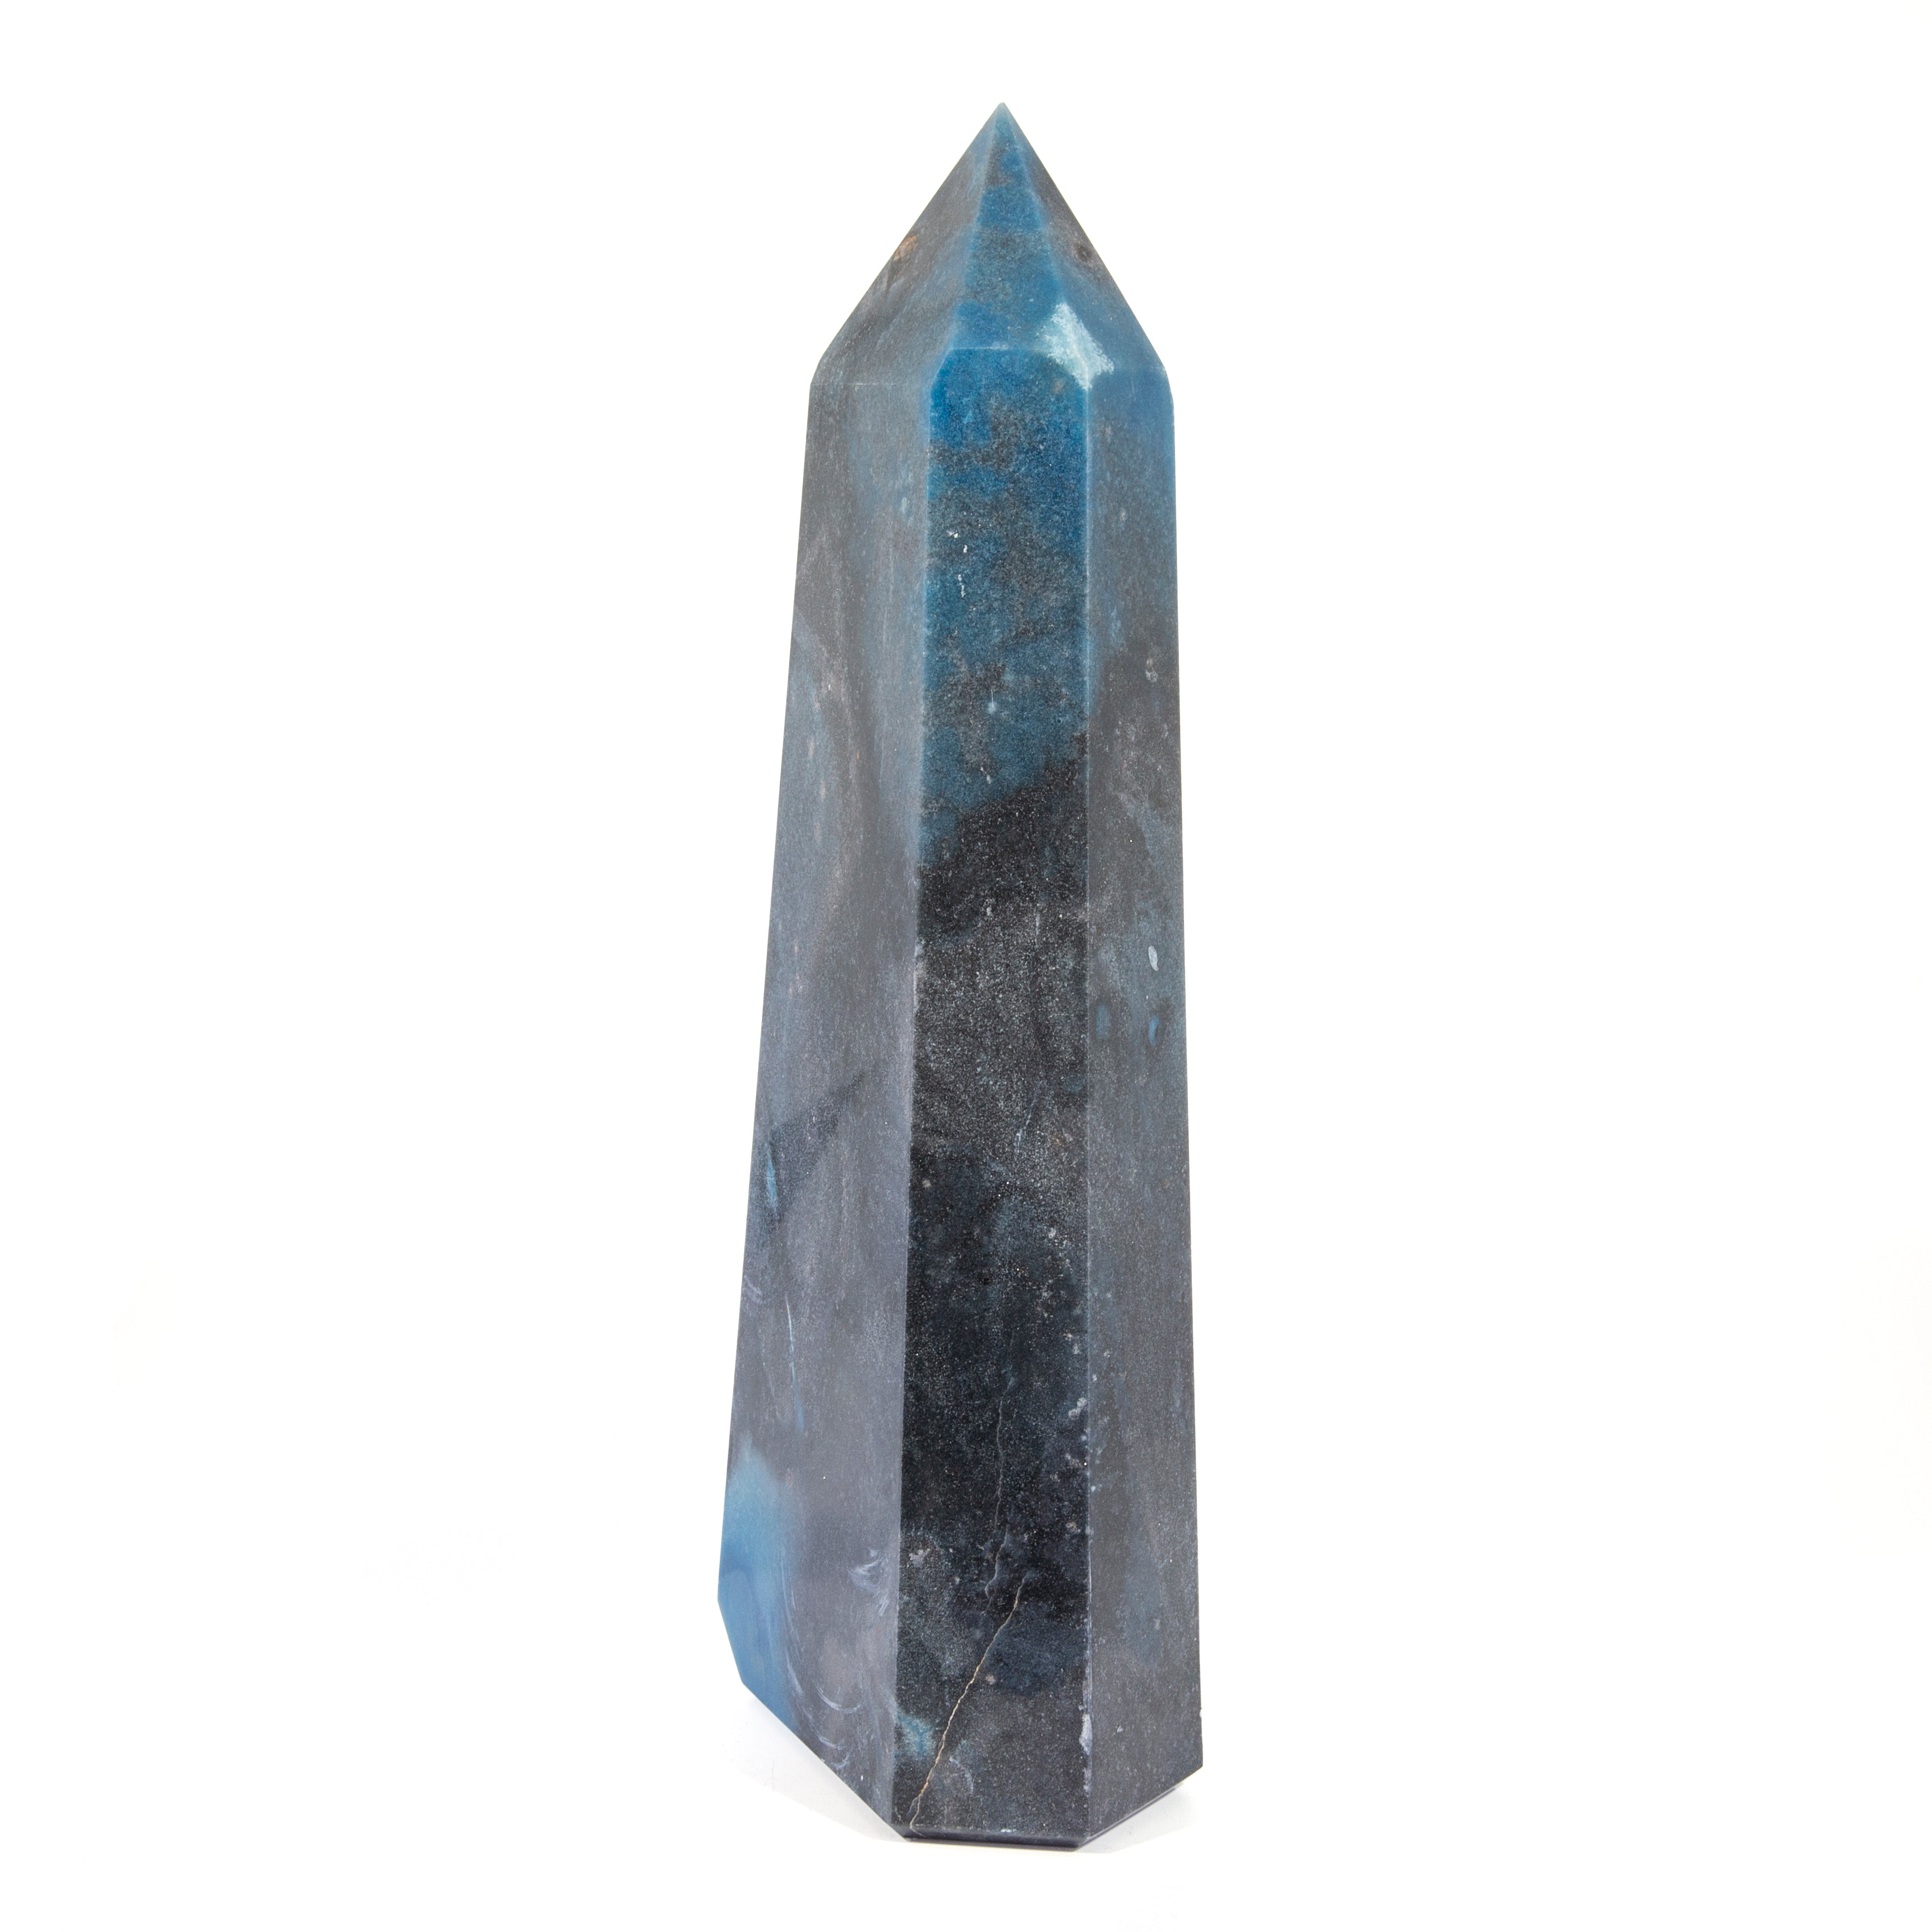 Trolleite in Quartzite 14 inch 11 lb Polished Crystal Tower - Brazil - JJH-054 - Crystalarium